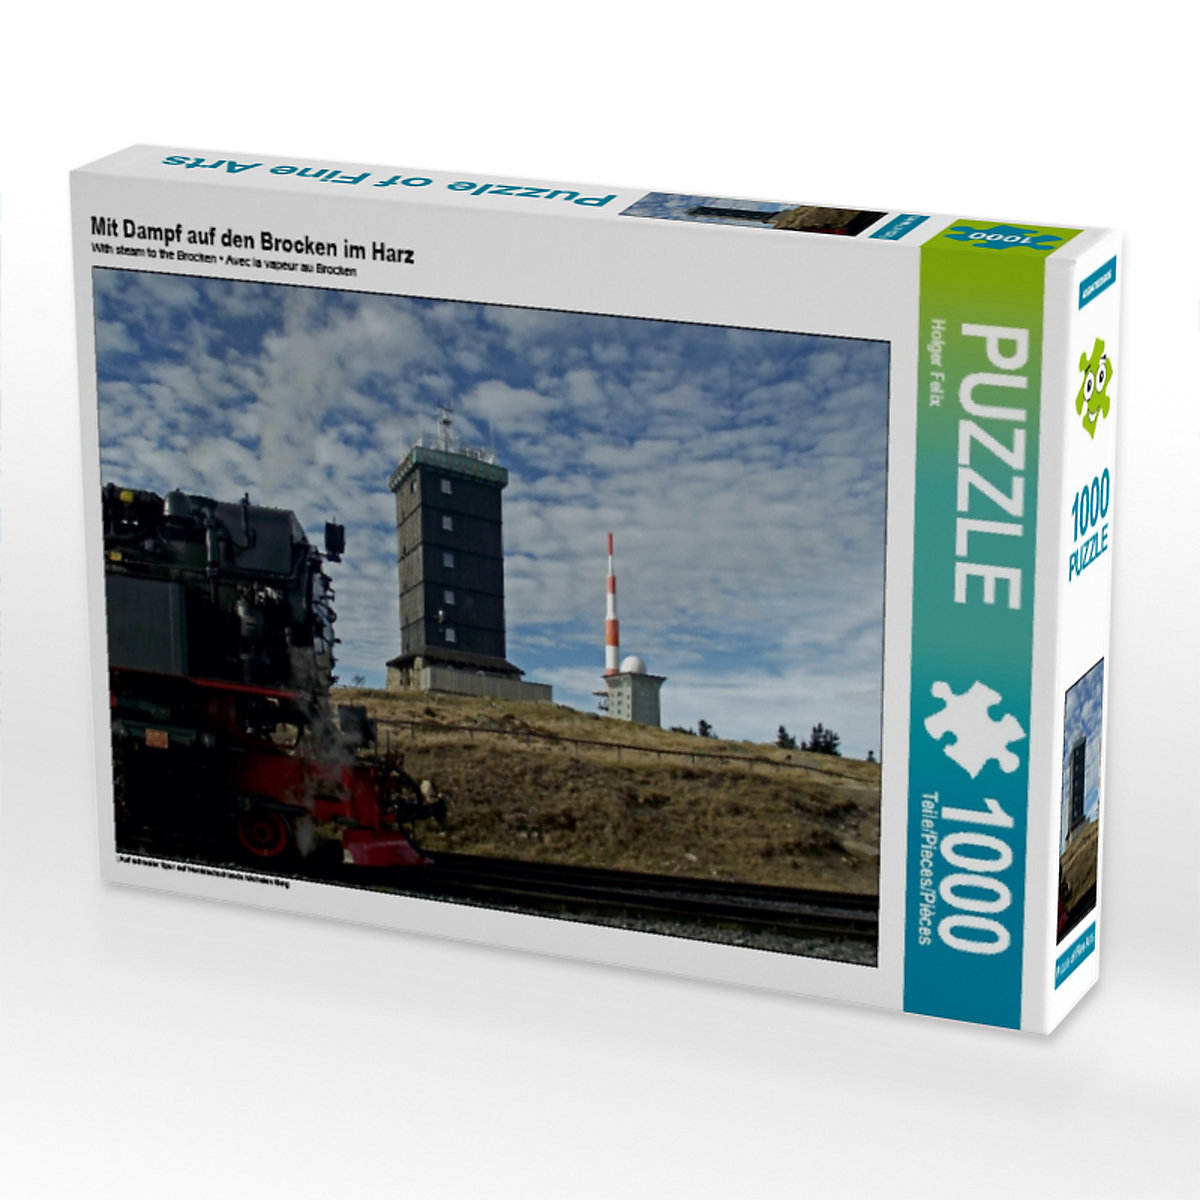 CALVENDO® Puzzle CALVENDO Puzzle Mit Dampf auf den Brocken im Harz 1000 Teile Foto-Puzzle für glückliche Stunden